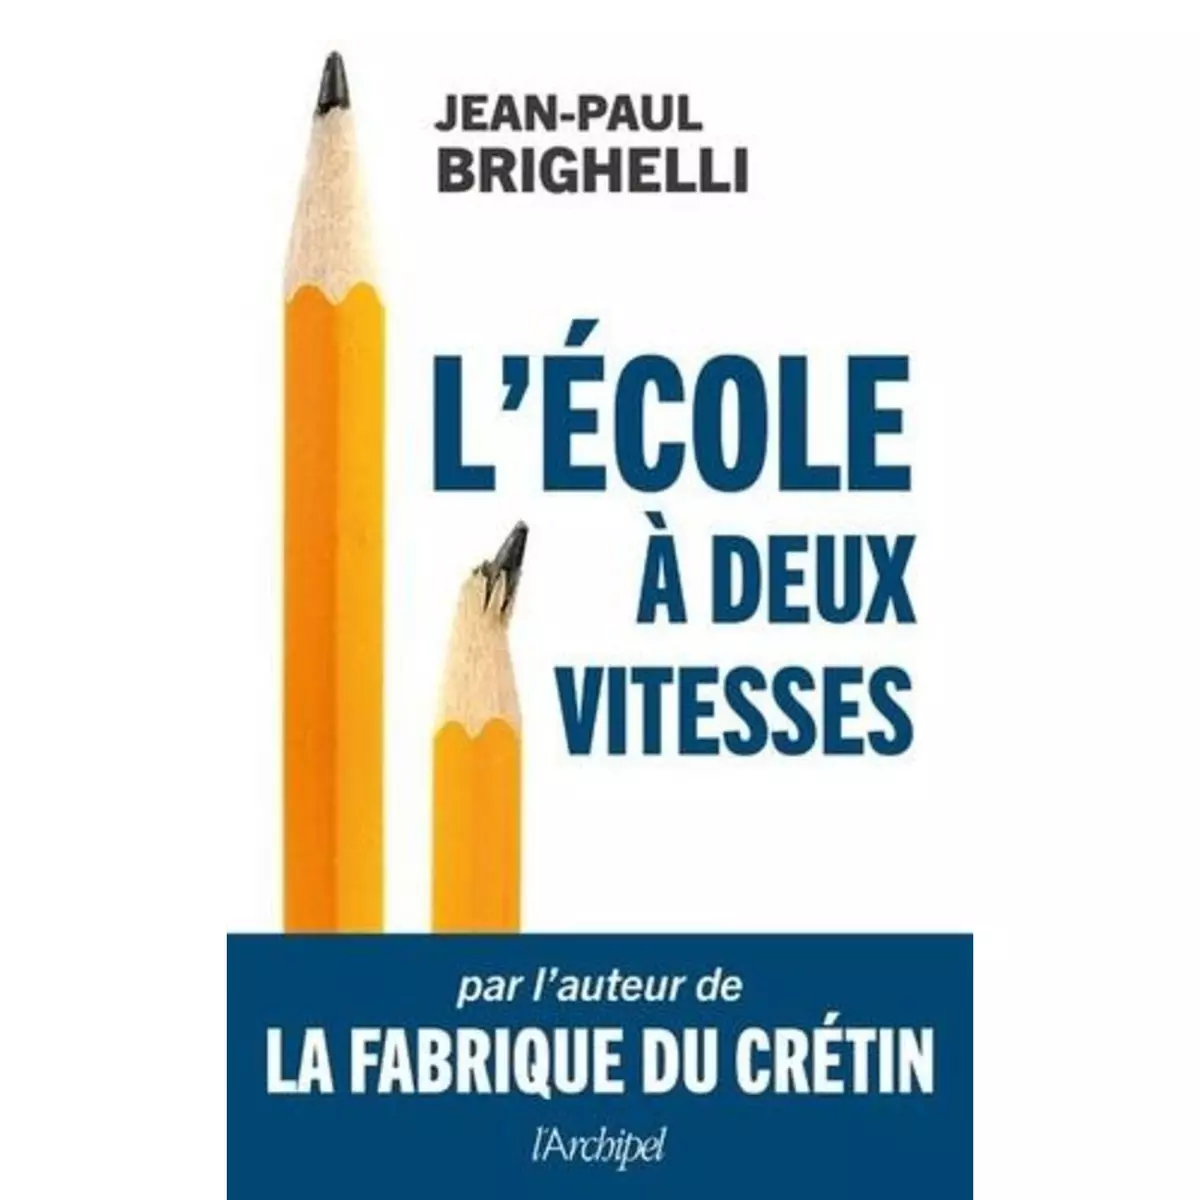  L'ECOLE A DEUX VITESSES, Brighelli Jean-Paul